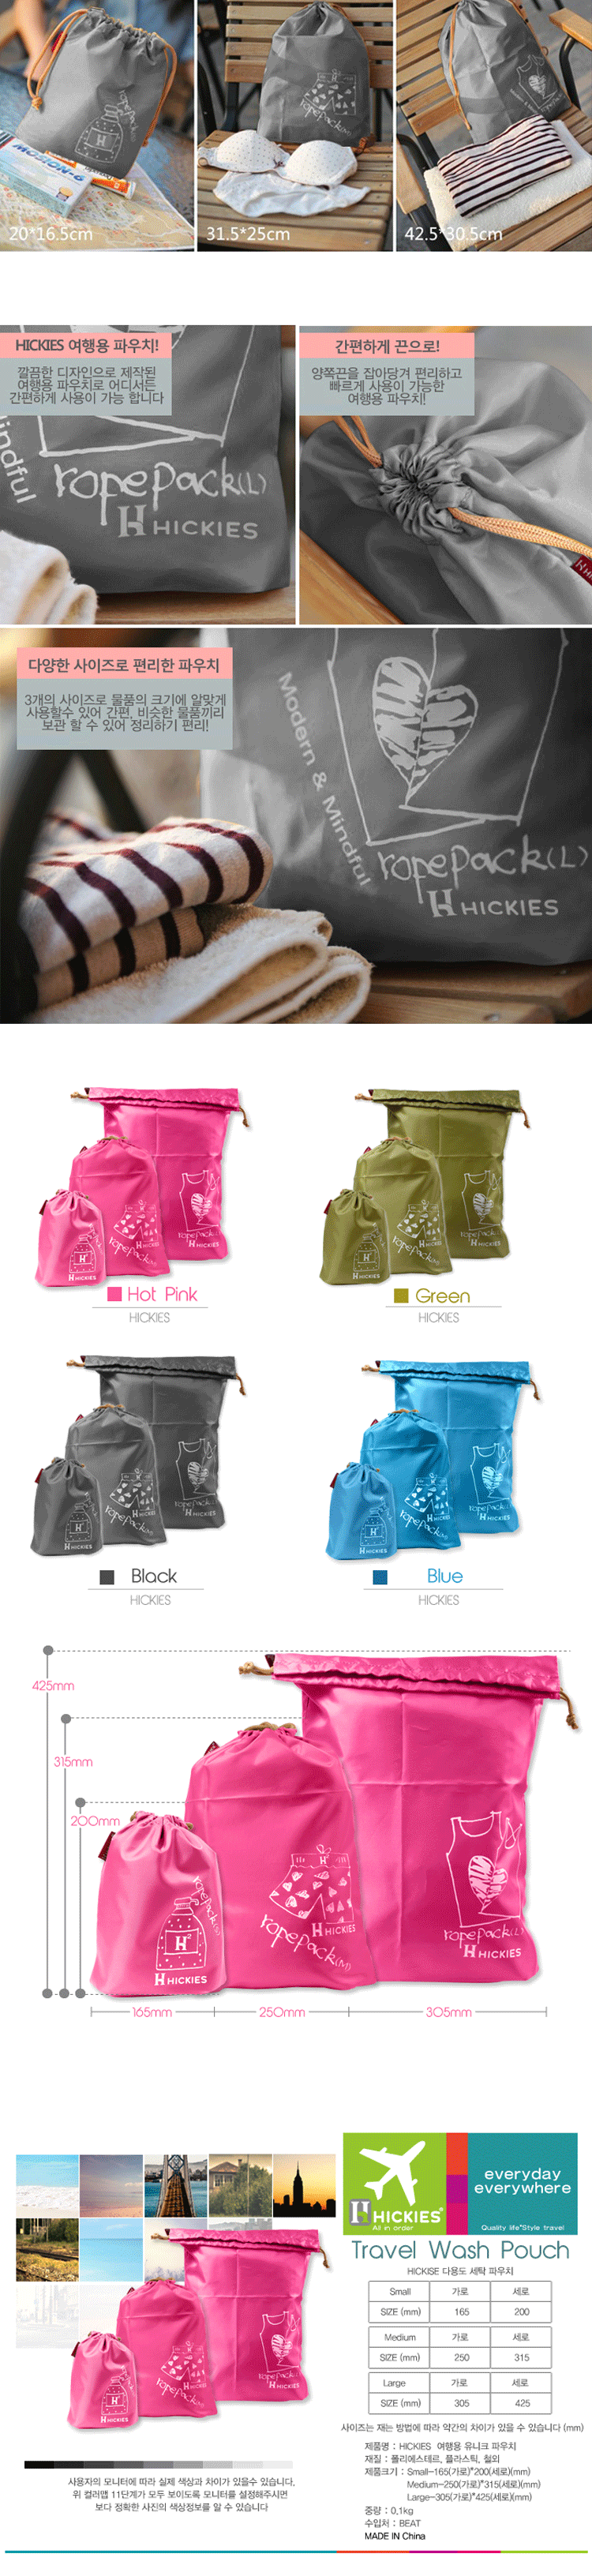 <br/><br/>  韓系旅行整理袋收納袋束口袋3件套(現貨+預購)<br/><br/>